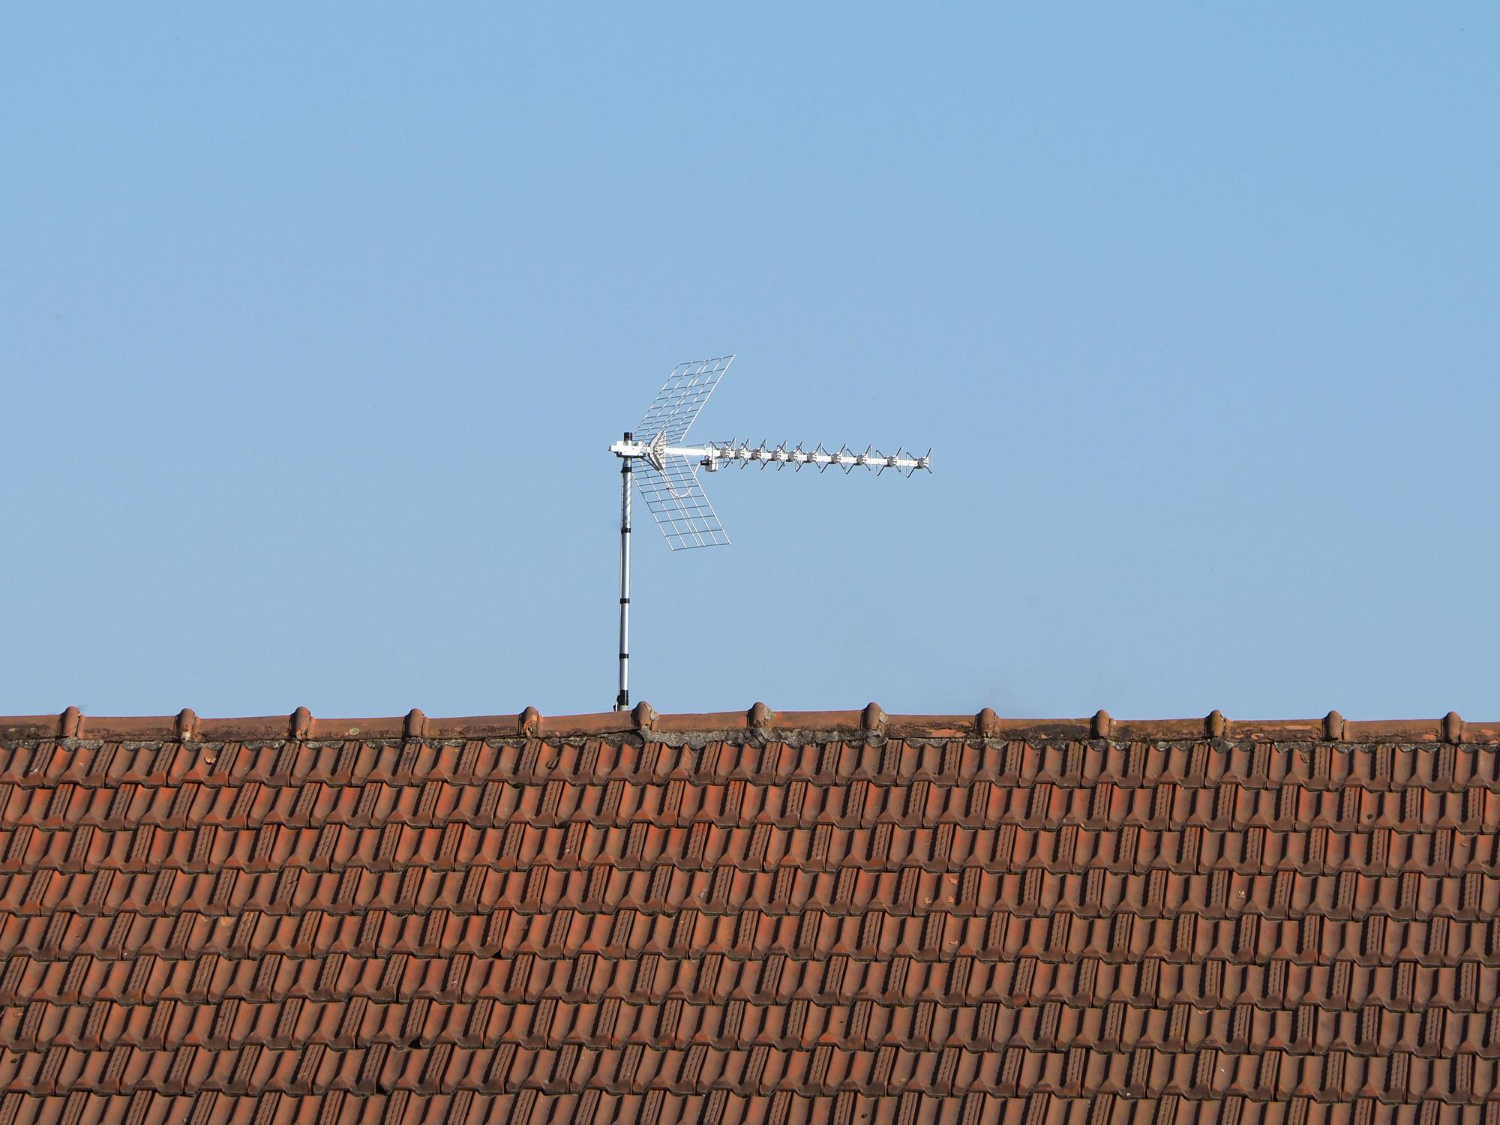 DVBT Antenne auf einem Hausdach